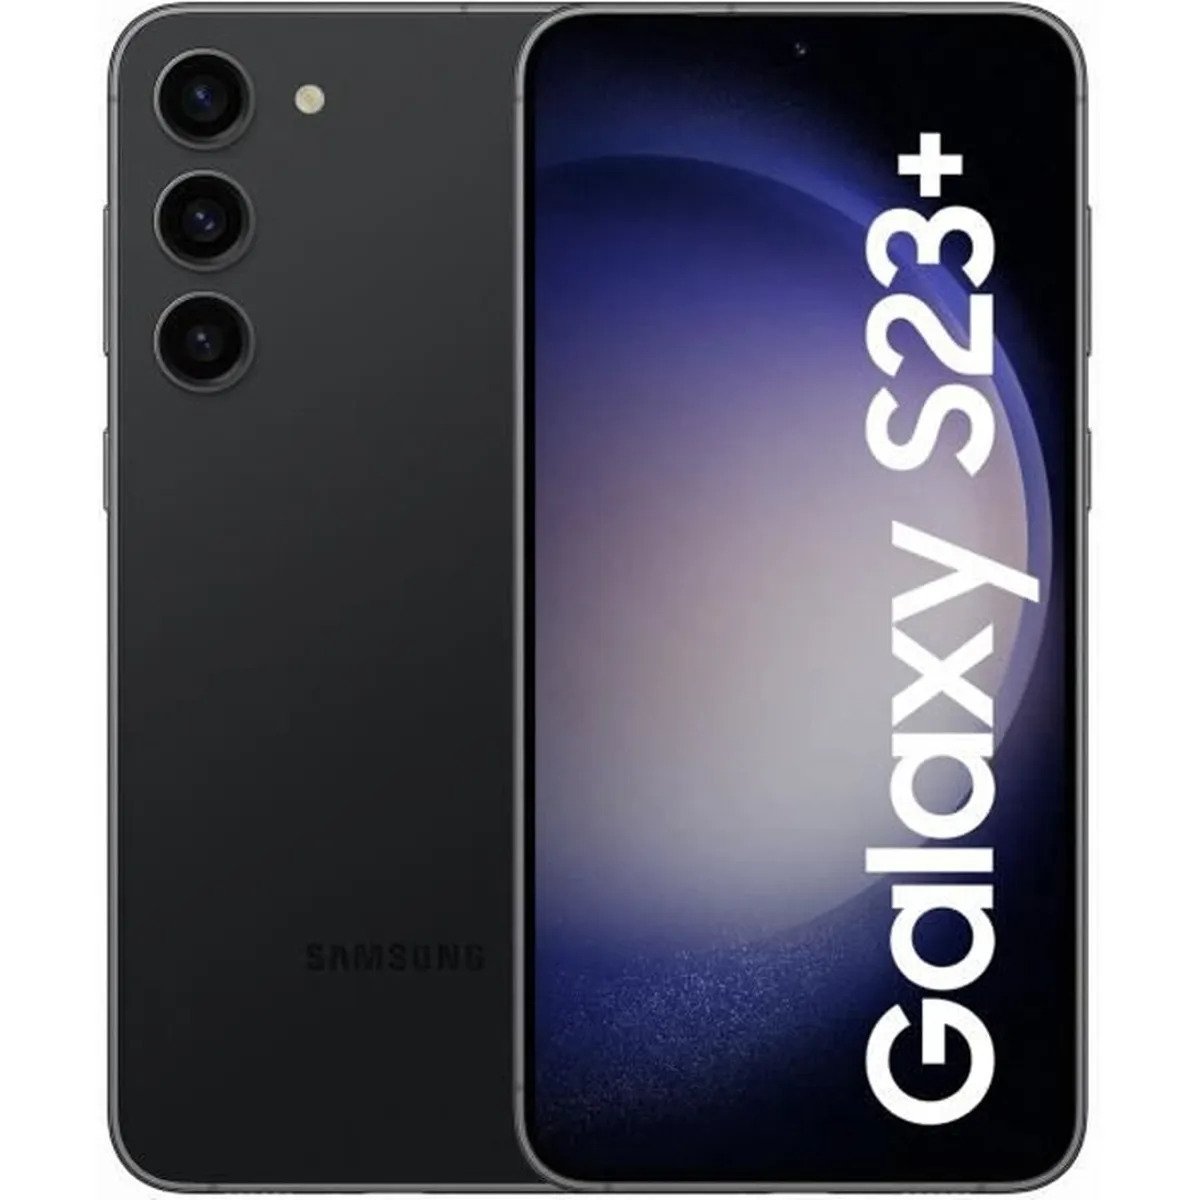 Samsung Galaxy S23 Plus à prix réduit sur Cdiscount + remboursement de 200 € ! © Cdiscount